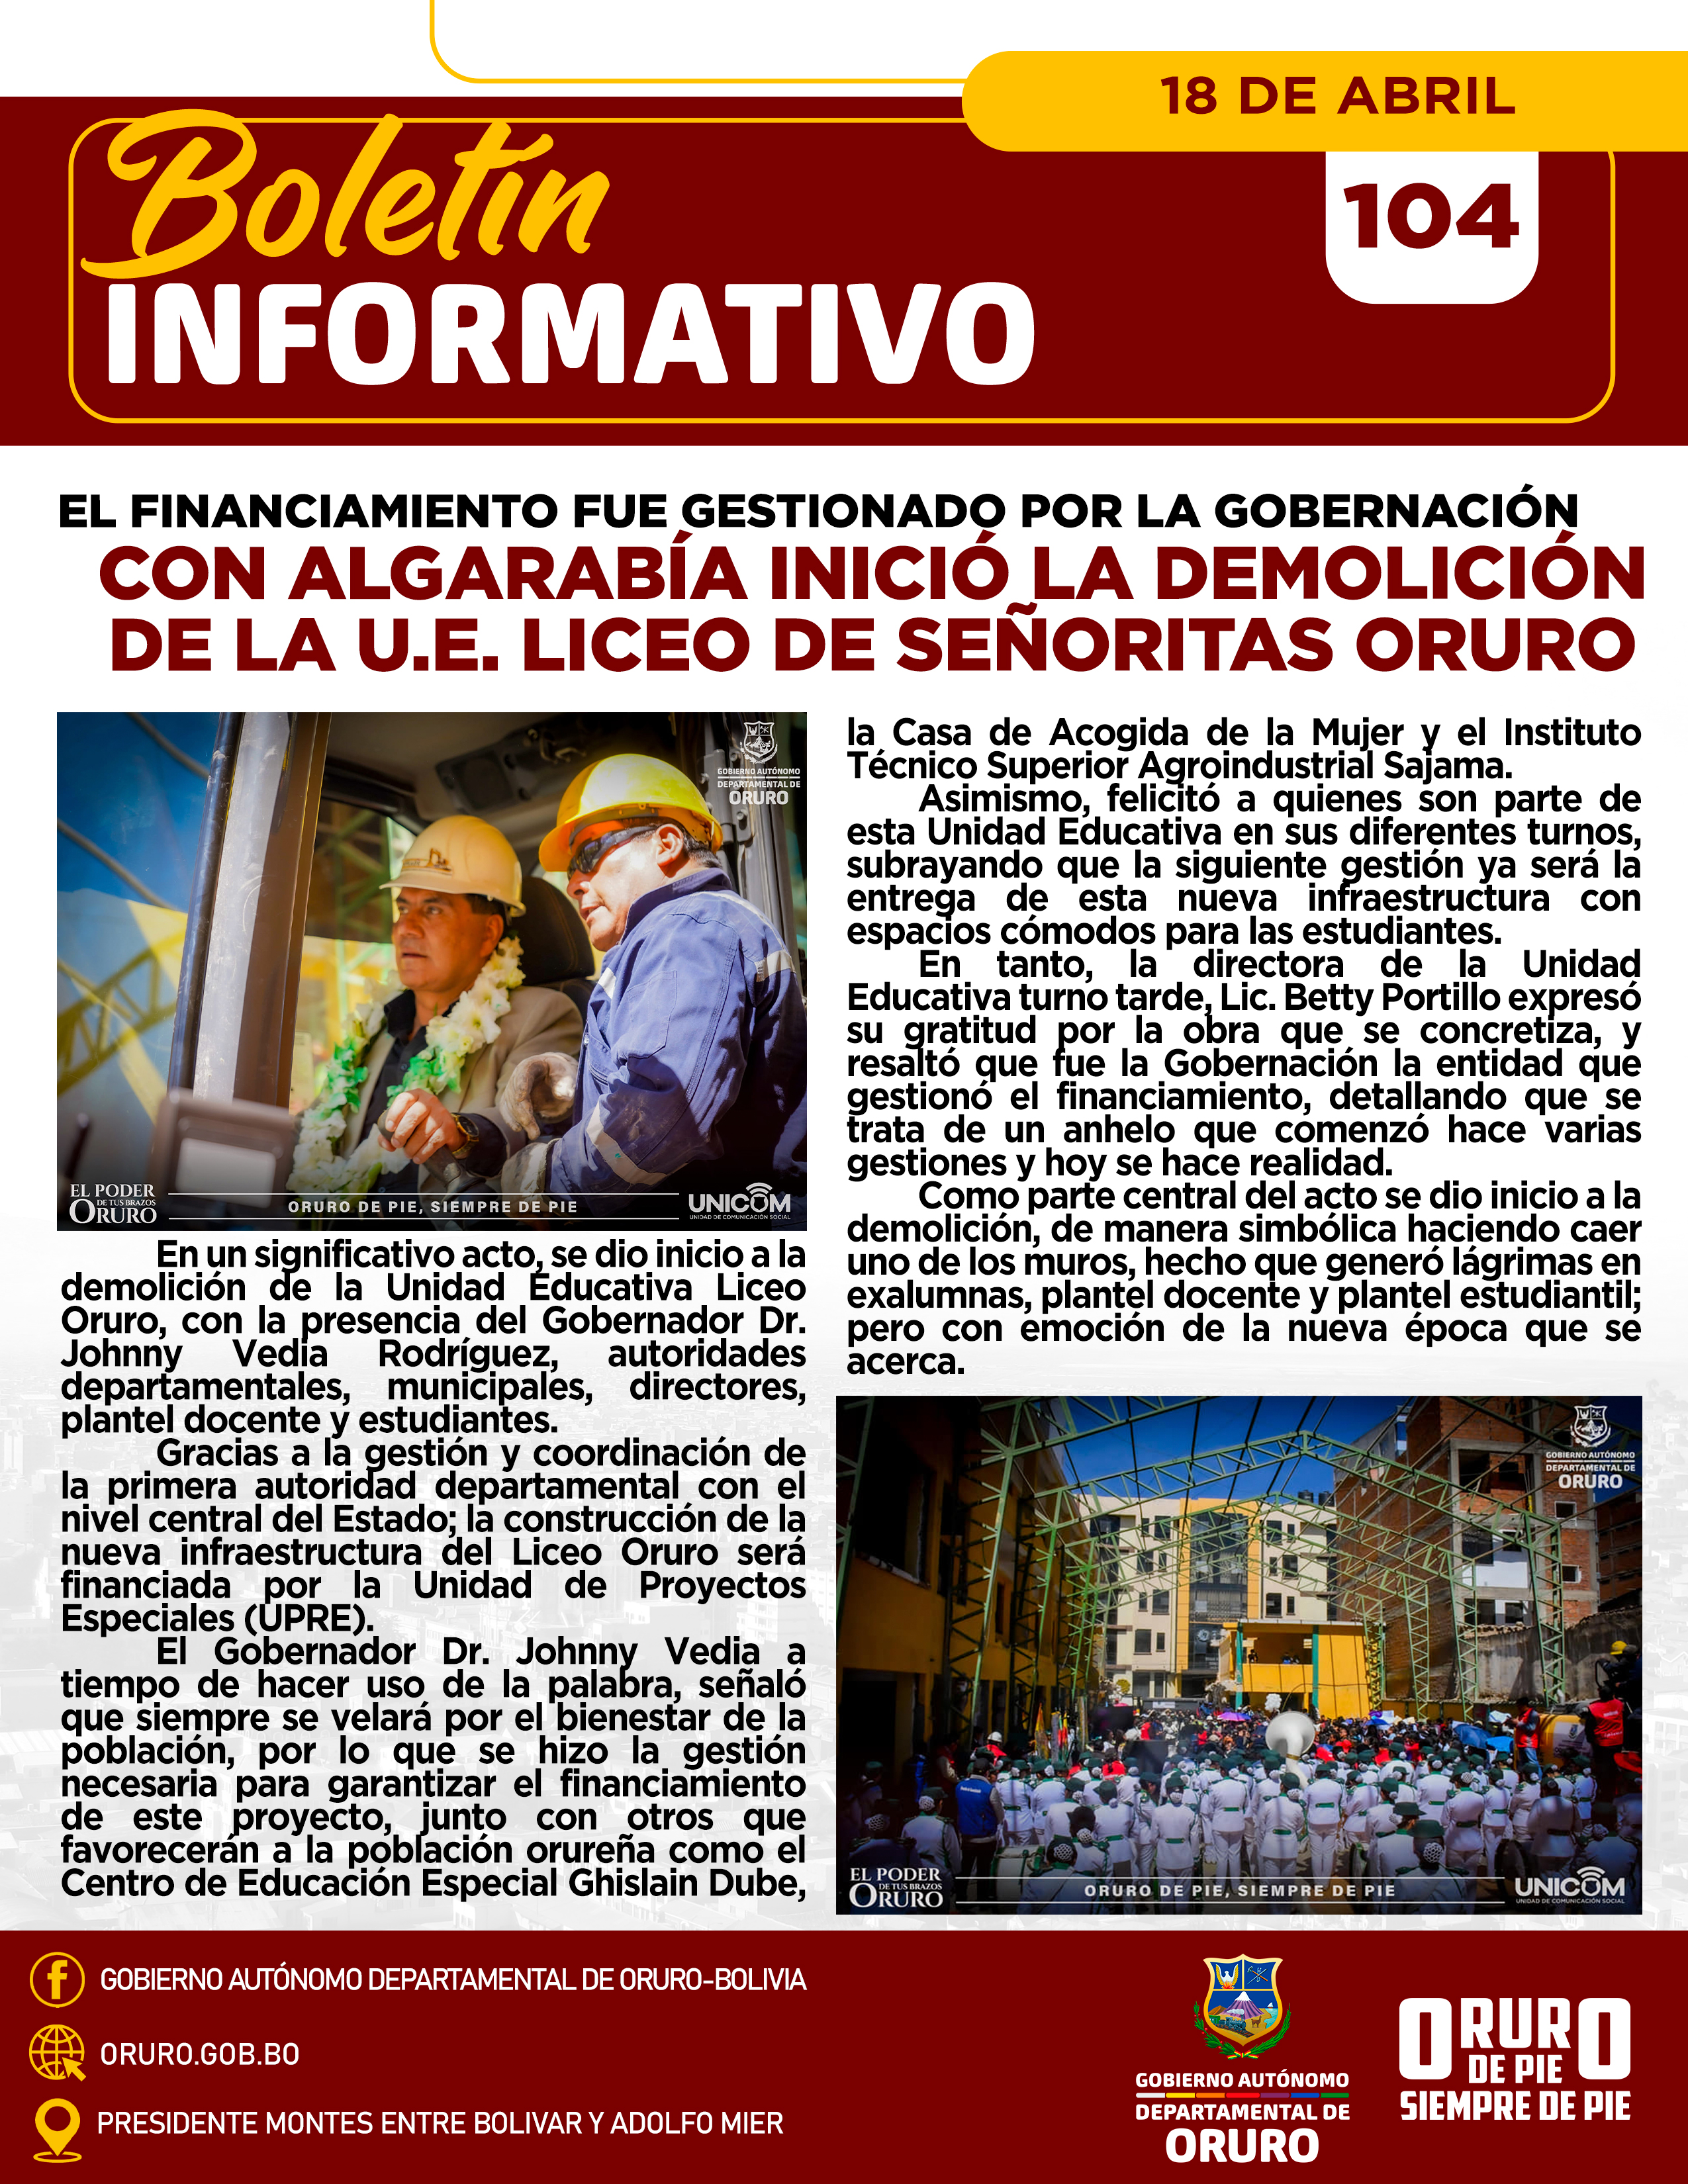 El financiamiento fue gestionado por la Gobernación, Con algarabía inició la demolición de la U.E. Liceo de Señoritas Oruro